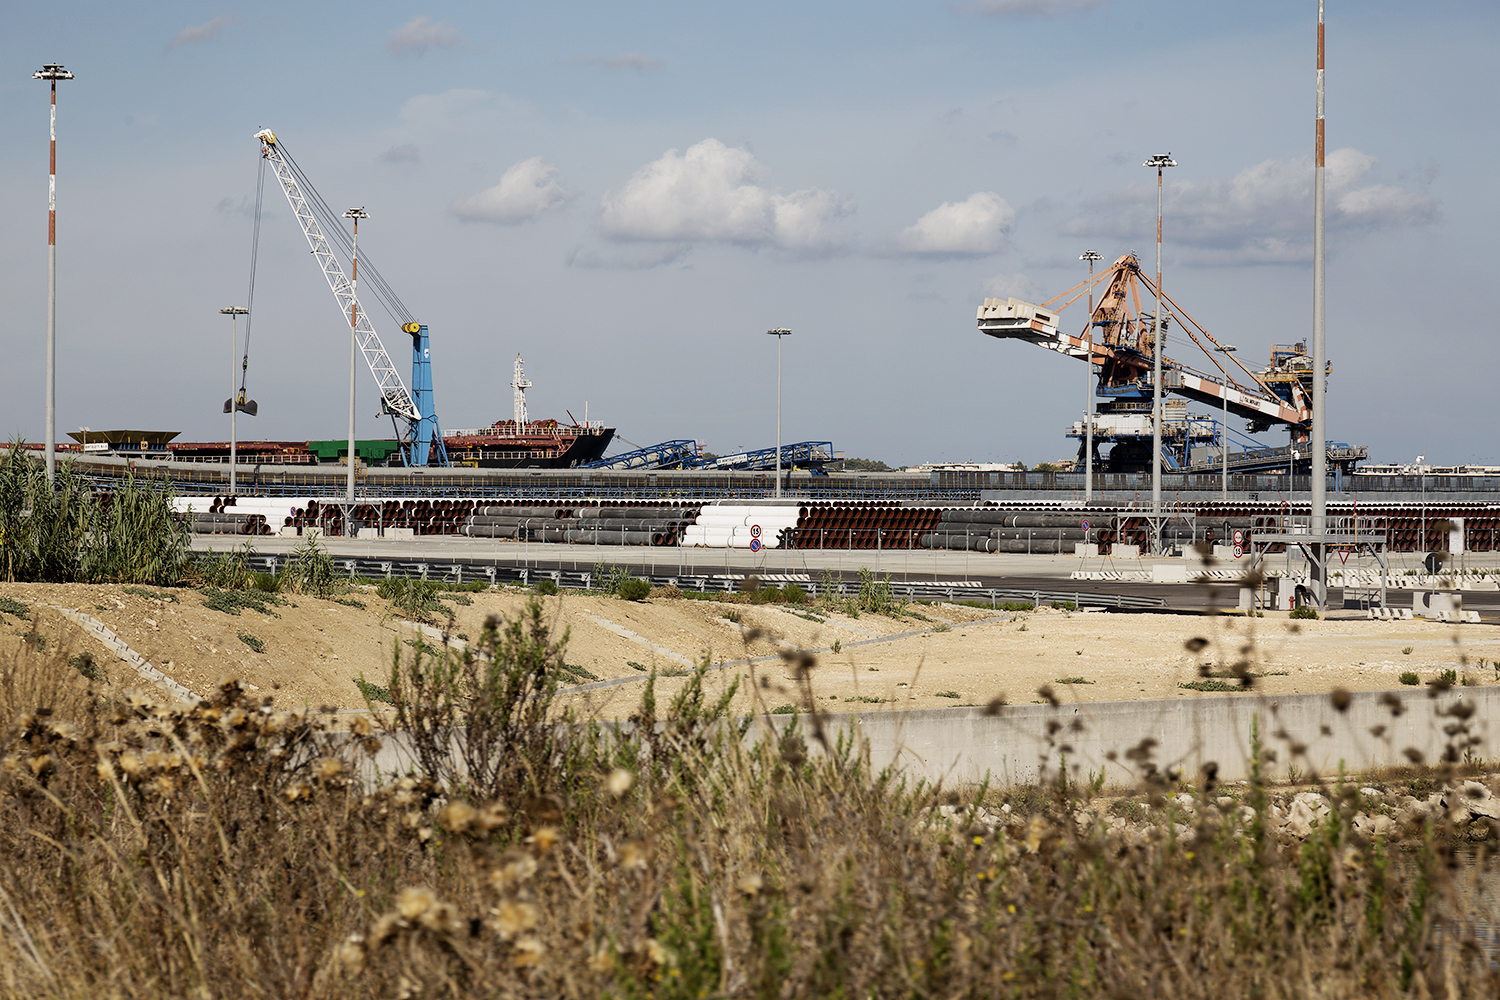   Porto di Brindisi, Costa Morena est. Area di stoccaggio delle tubazioni che saranno utilizzate per la costruzione del condotto TAP.  Edificata per dare maggiori opportunità di sviluppo delle attività commerciali legate al porto, da tempo l'area è i